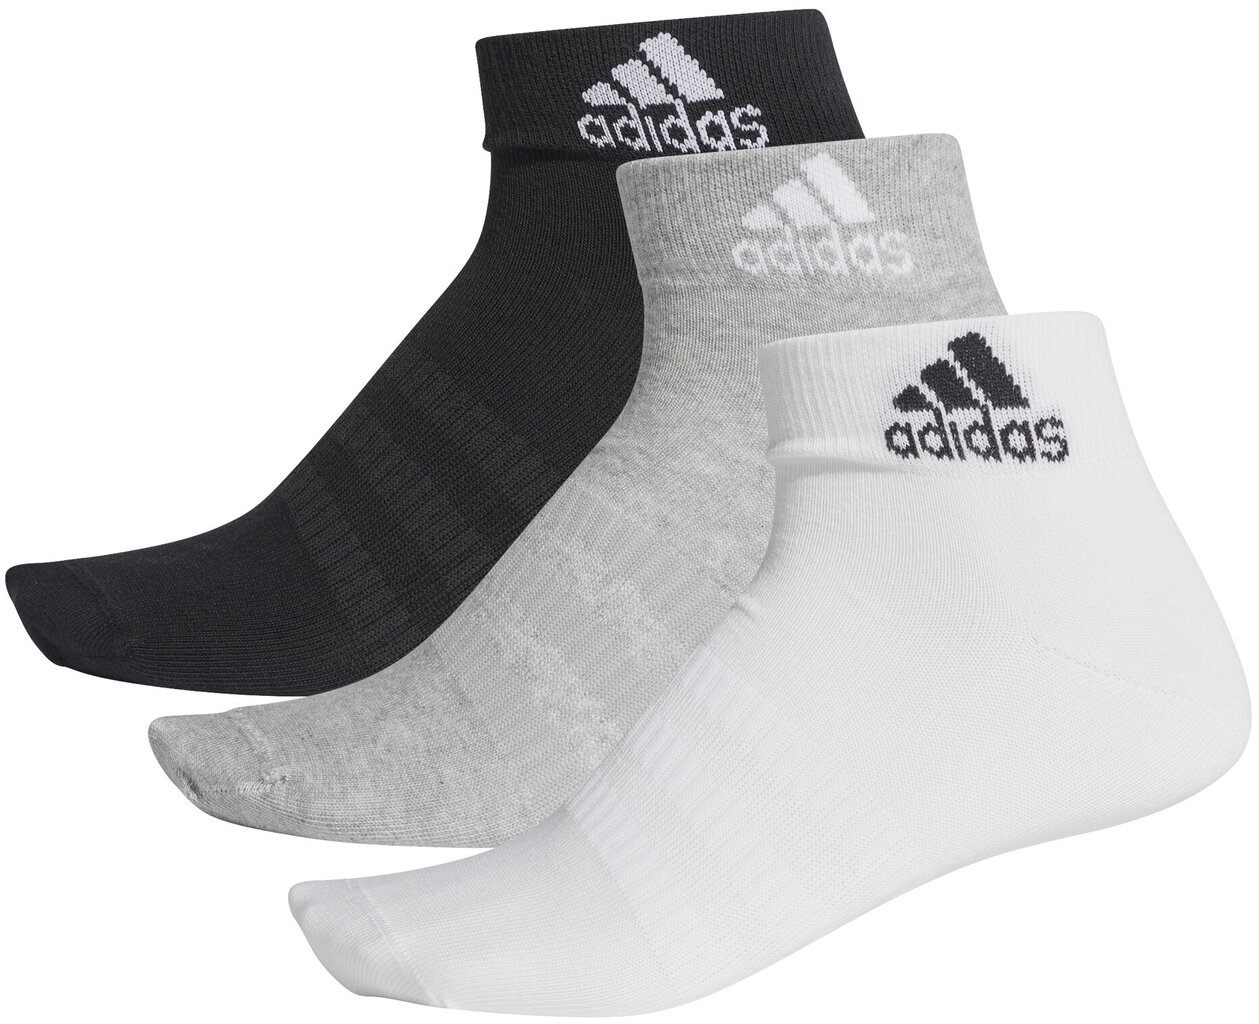 Kojinės Adidas Light Ank 3Pp Black Grey White kaina ir informacija | Vyriškos kojinės | pigu.lt